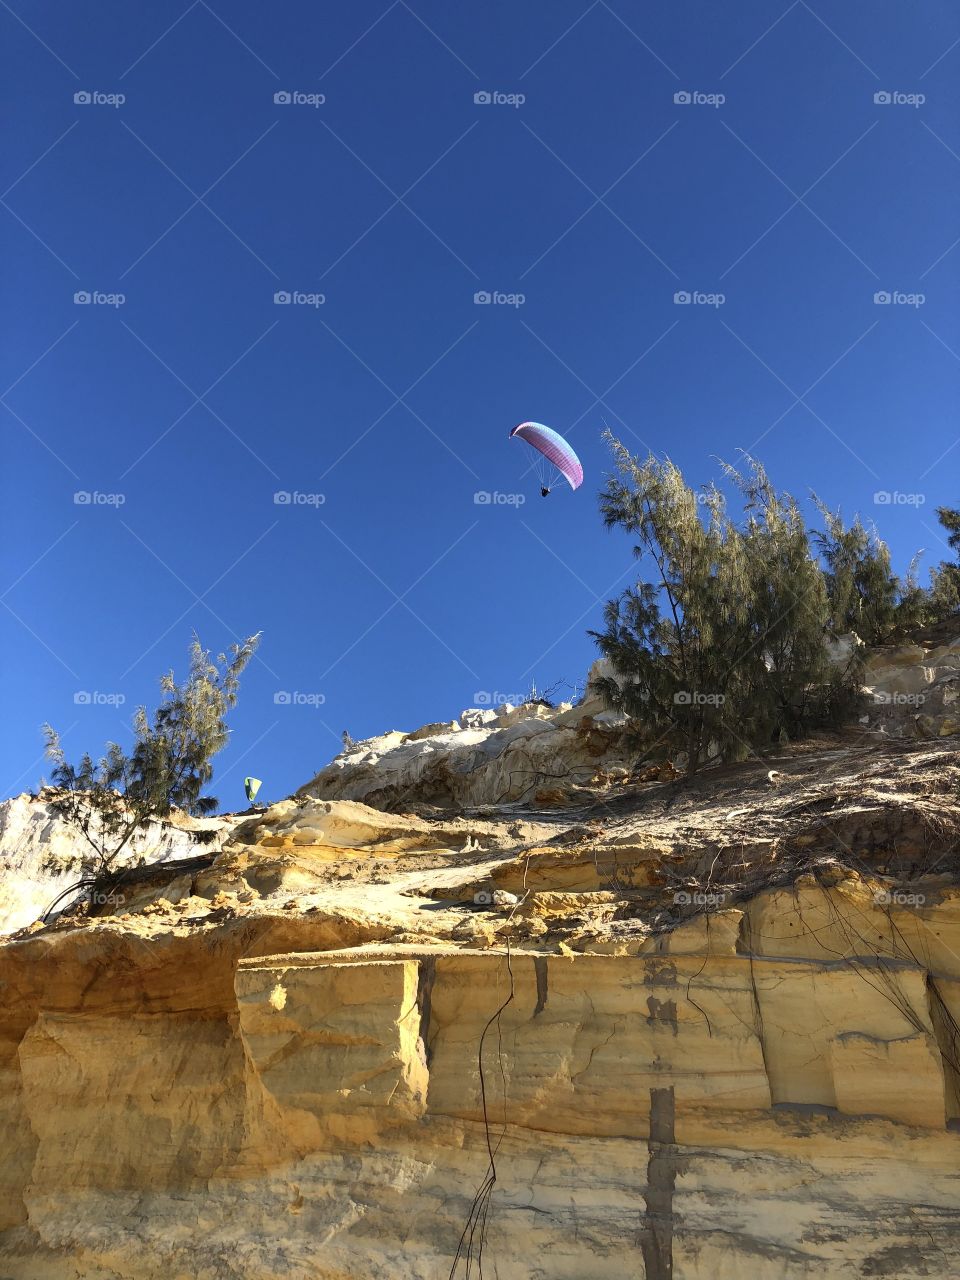 Sandstone cliff facing